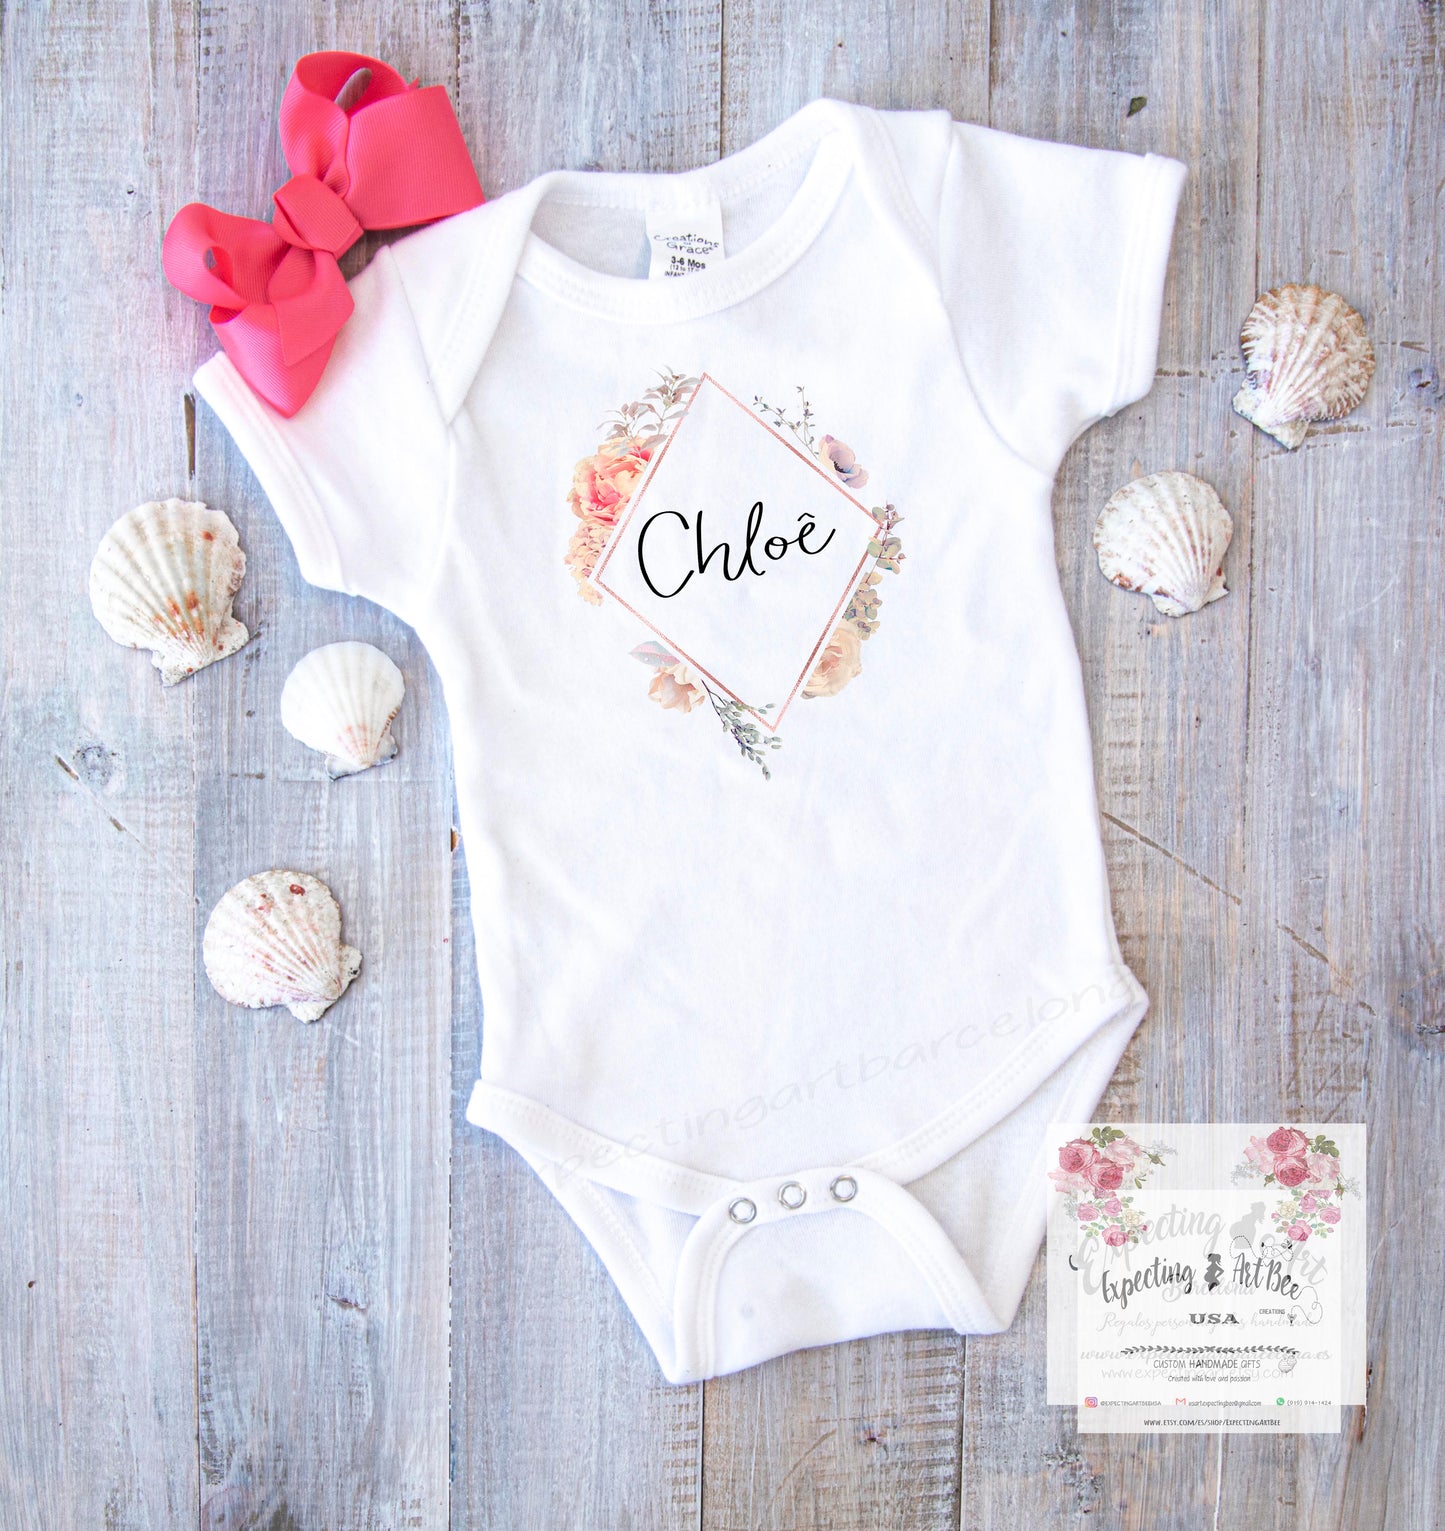 Bodie de algodón bebé personalizado con el nombre | Mod. Chloe florecitas| Manga Corta y Manga Larga | Tallas Varias.